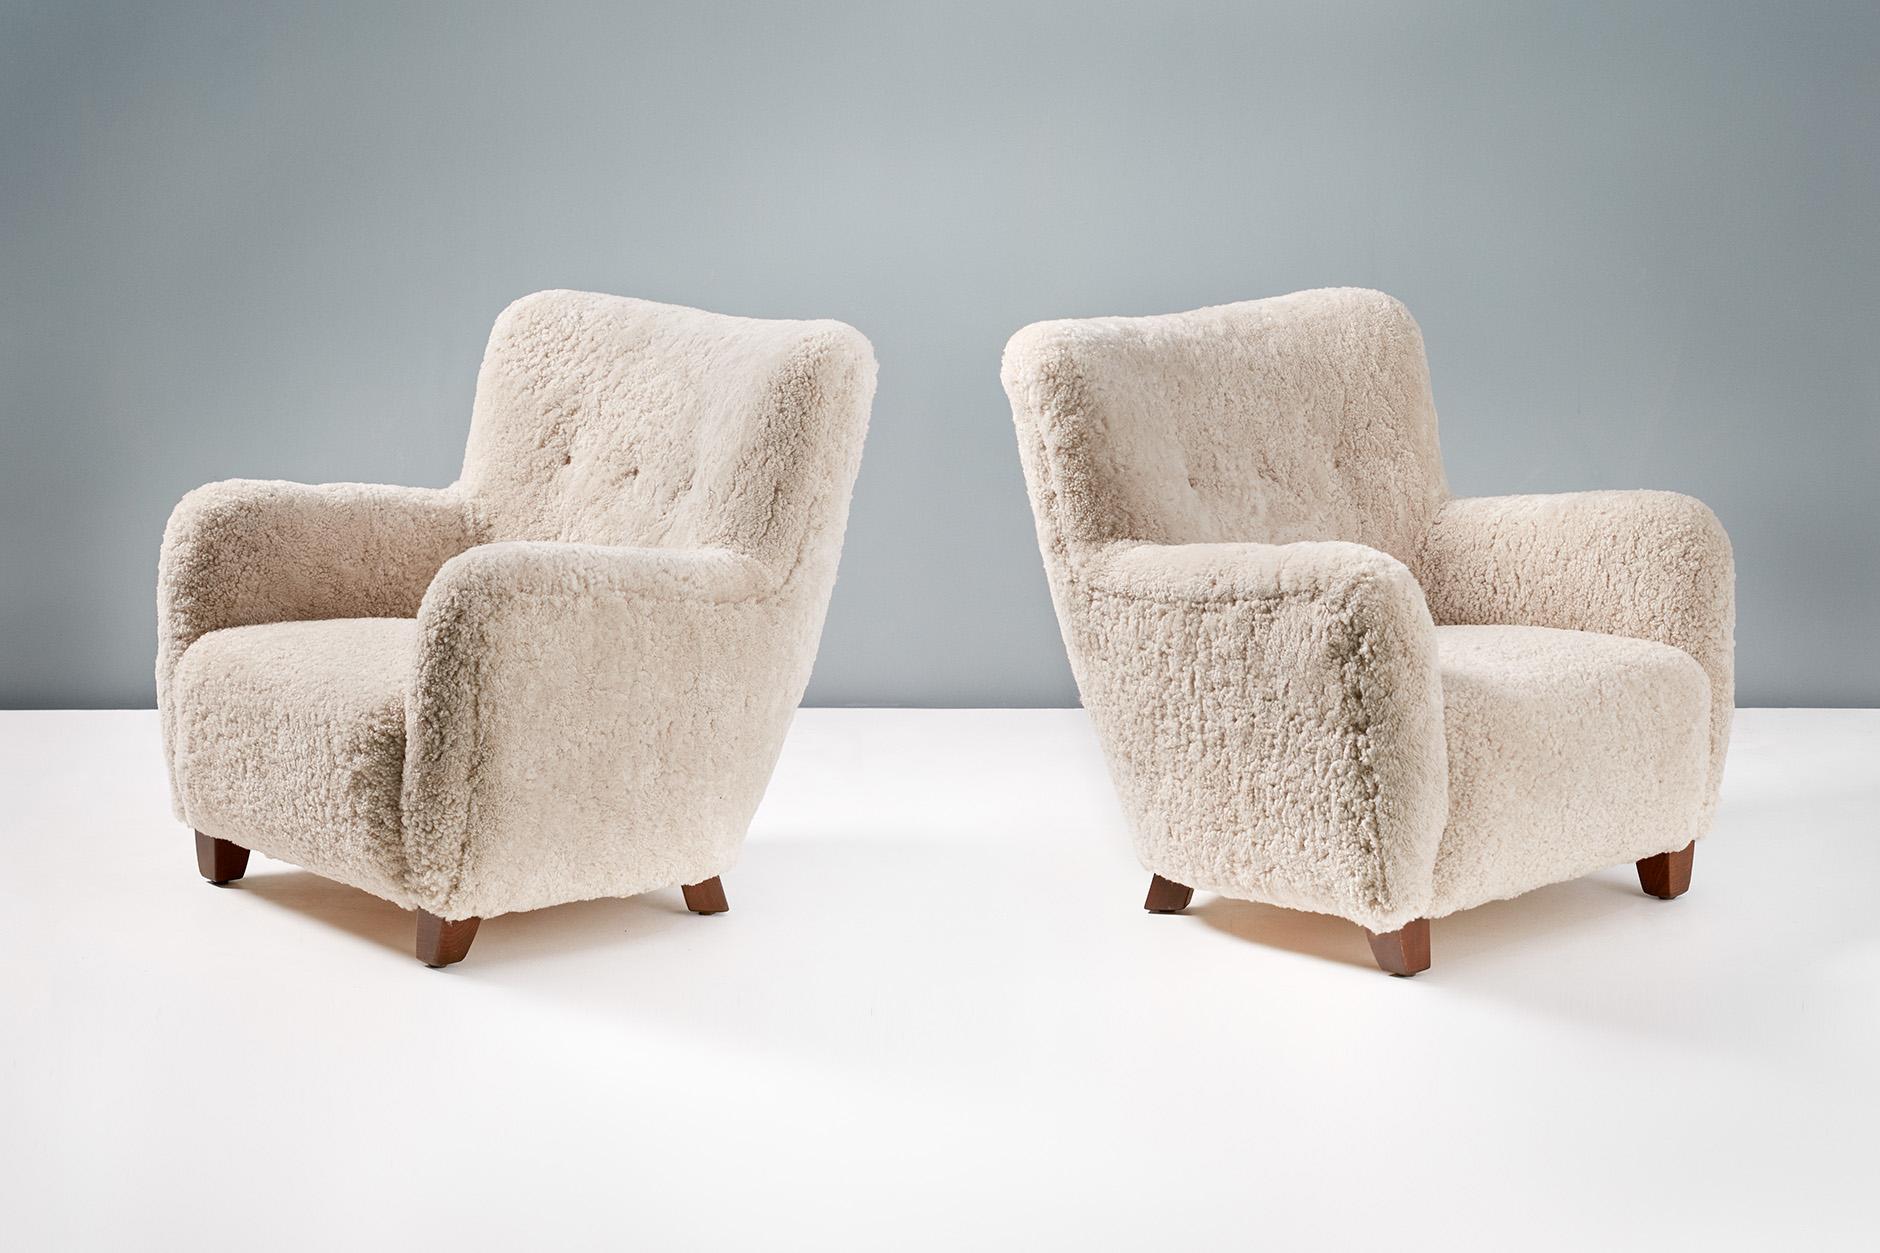 Une paire de fauteuils sur mesure inspirés des styles modernes danois des années 1940-50. 

Ces productions haut de gamme sont fabriquées à la main dans nos ateliers en Angleterre. Les pieds de la chaise sont disponibles en noyer huilé, chêne huilé